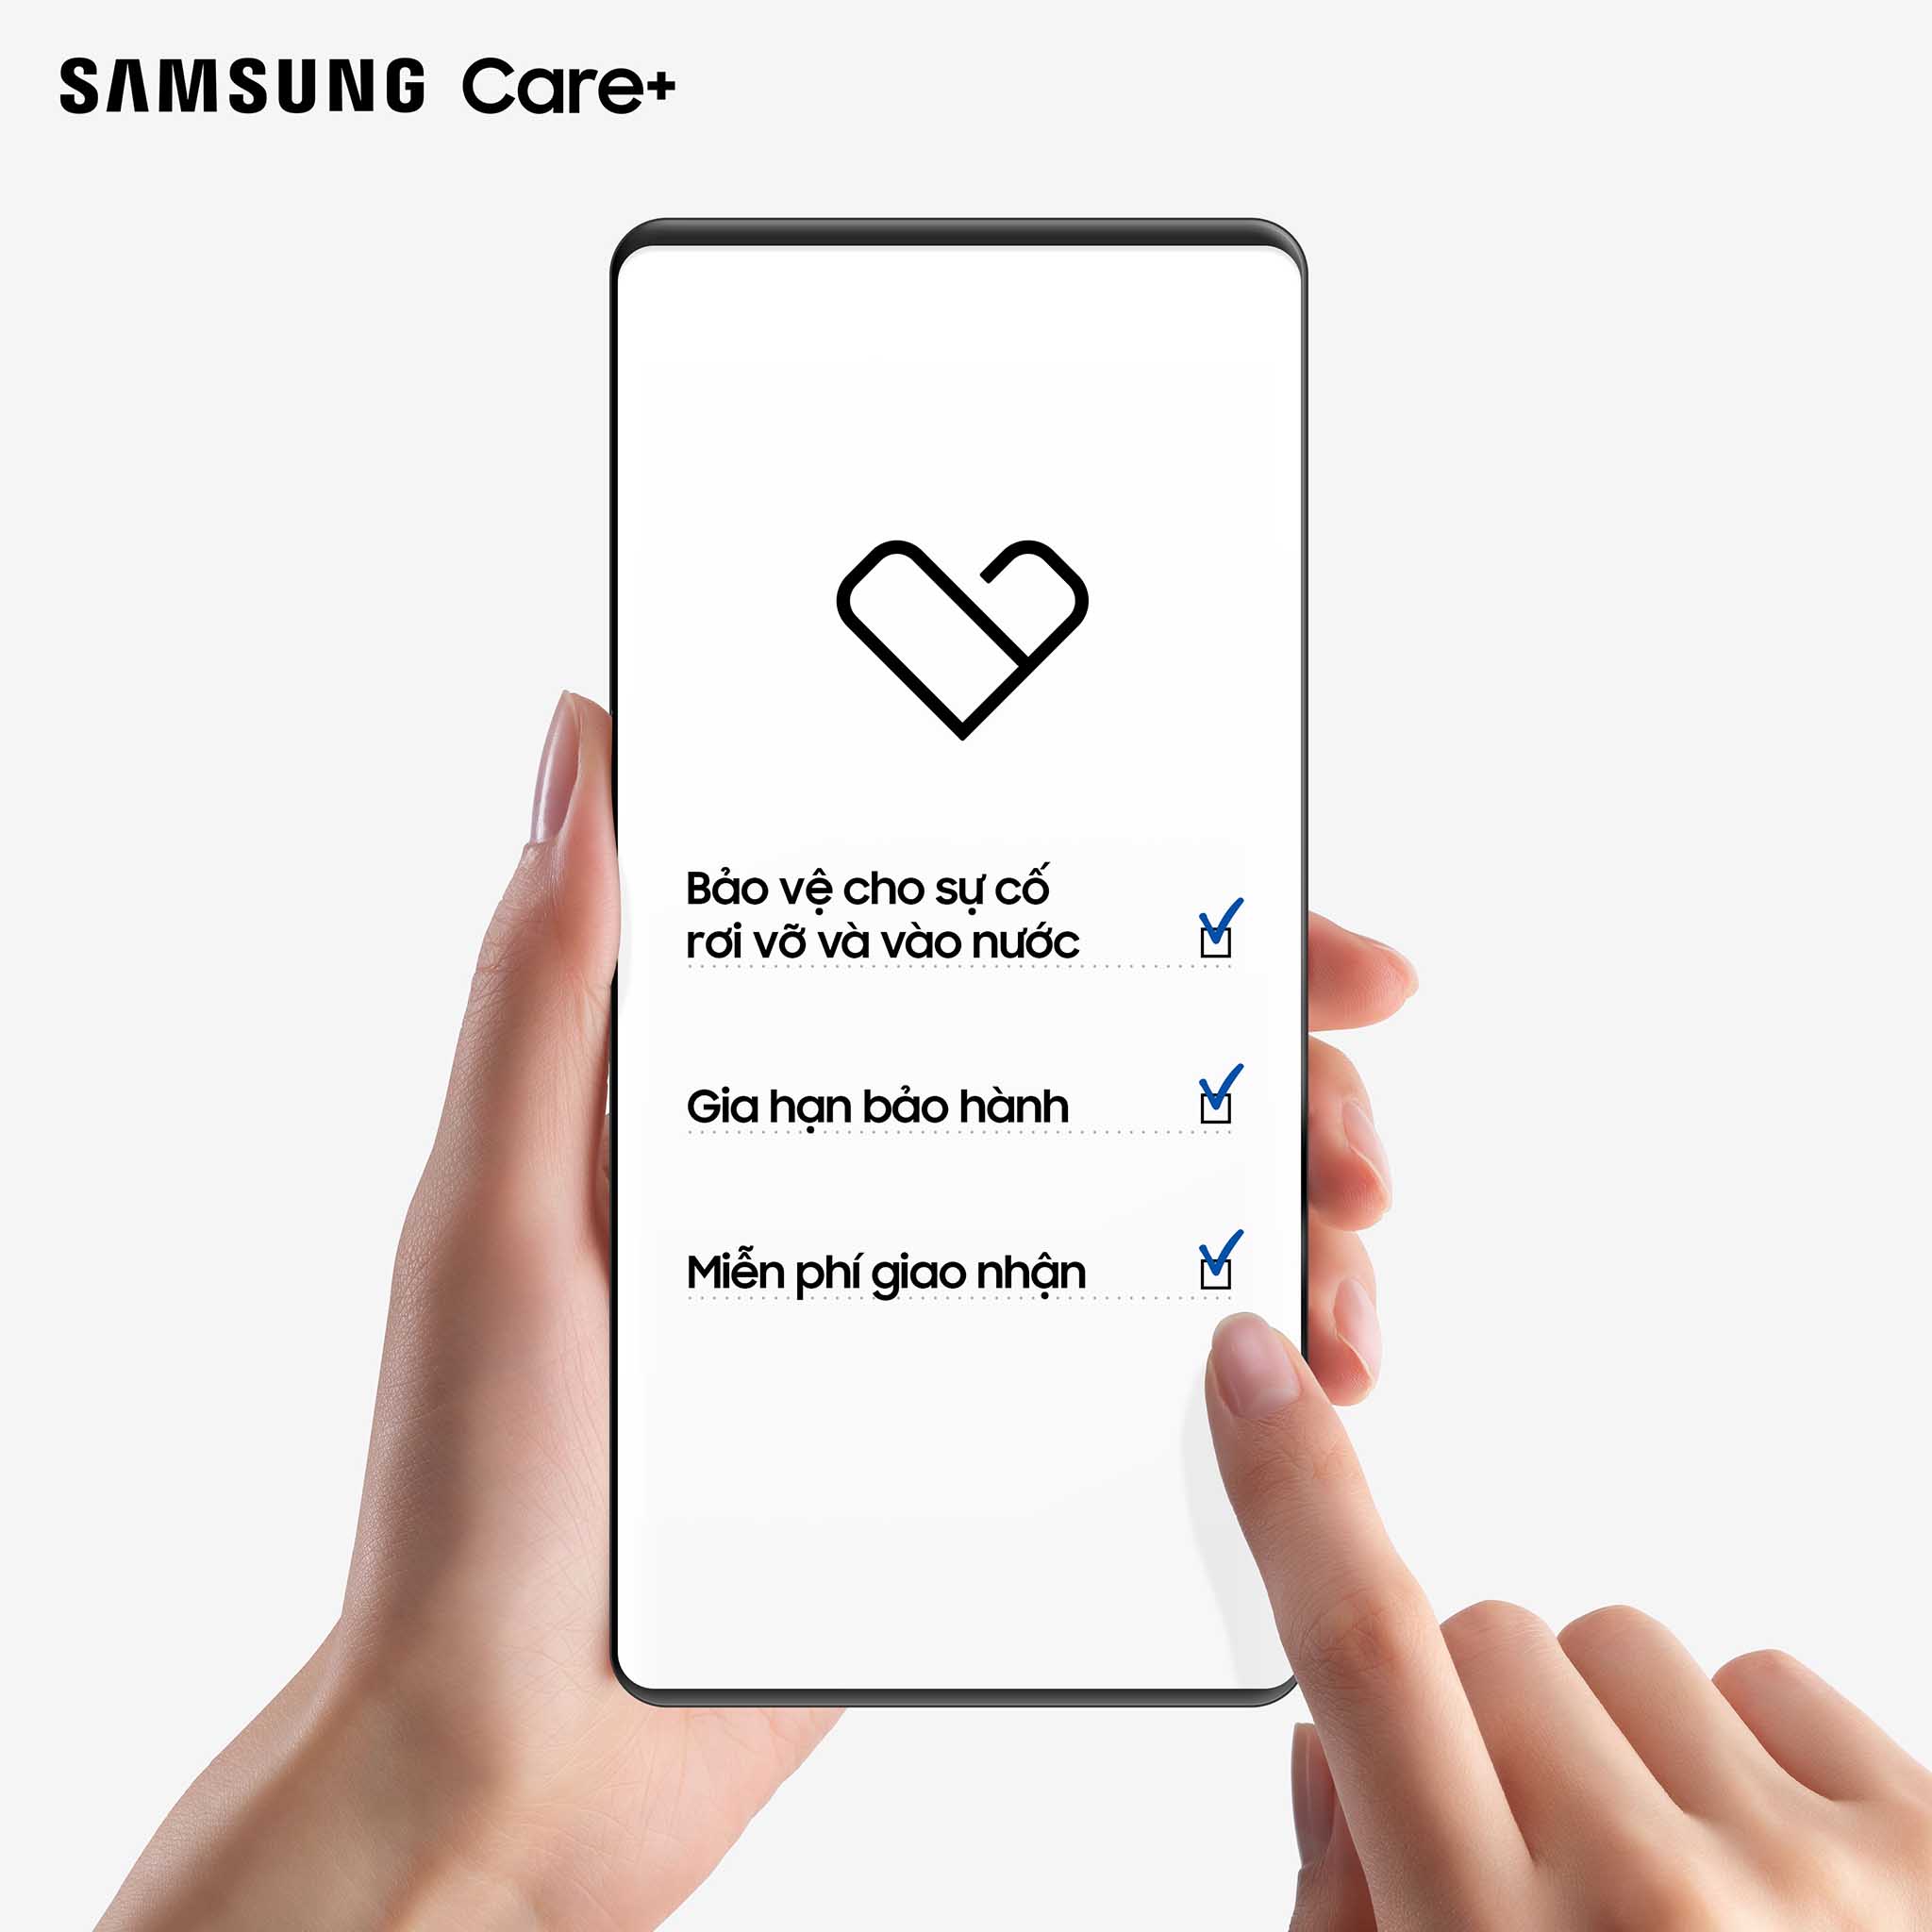 Samsung chính thức bổ sung thêm lựa chọn gói bảo hành cho dịch vụ Samsung Care+